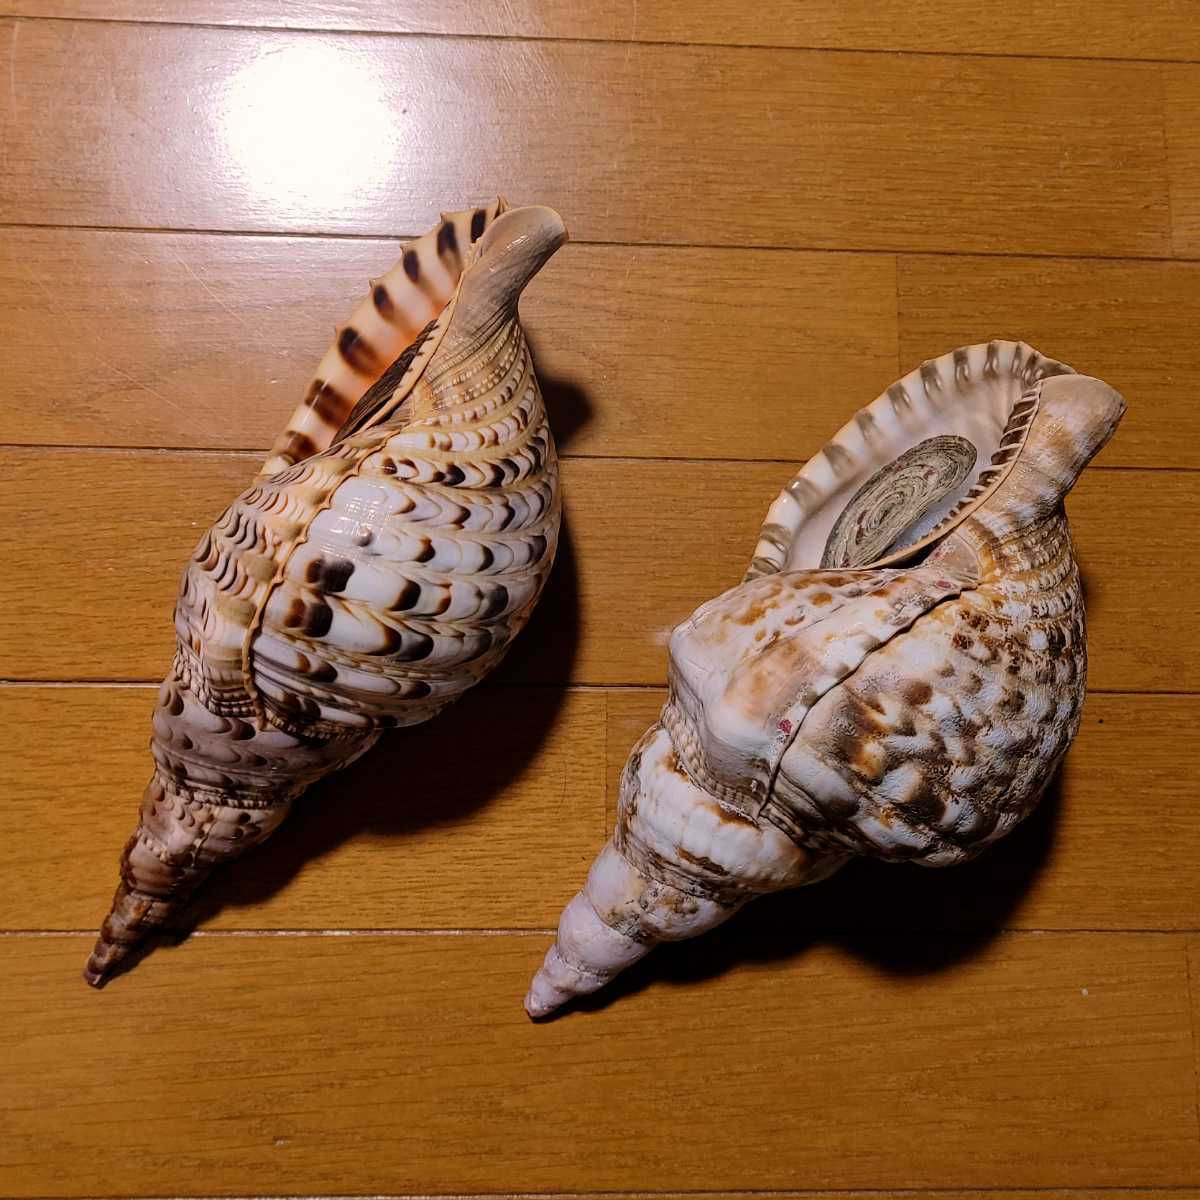 セイヨウホラガイ(カリブ海の法螺貝)